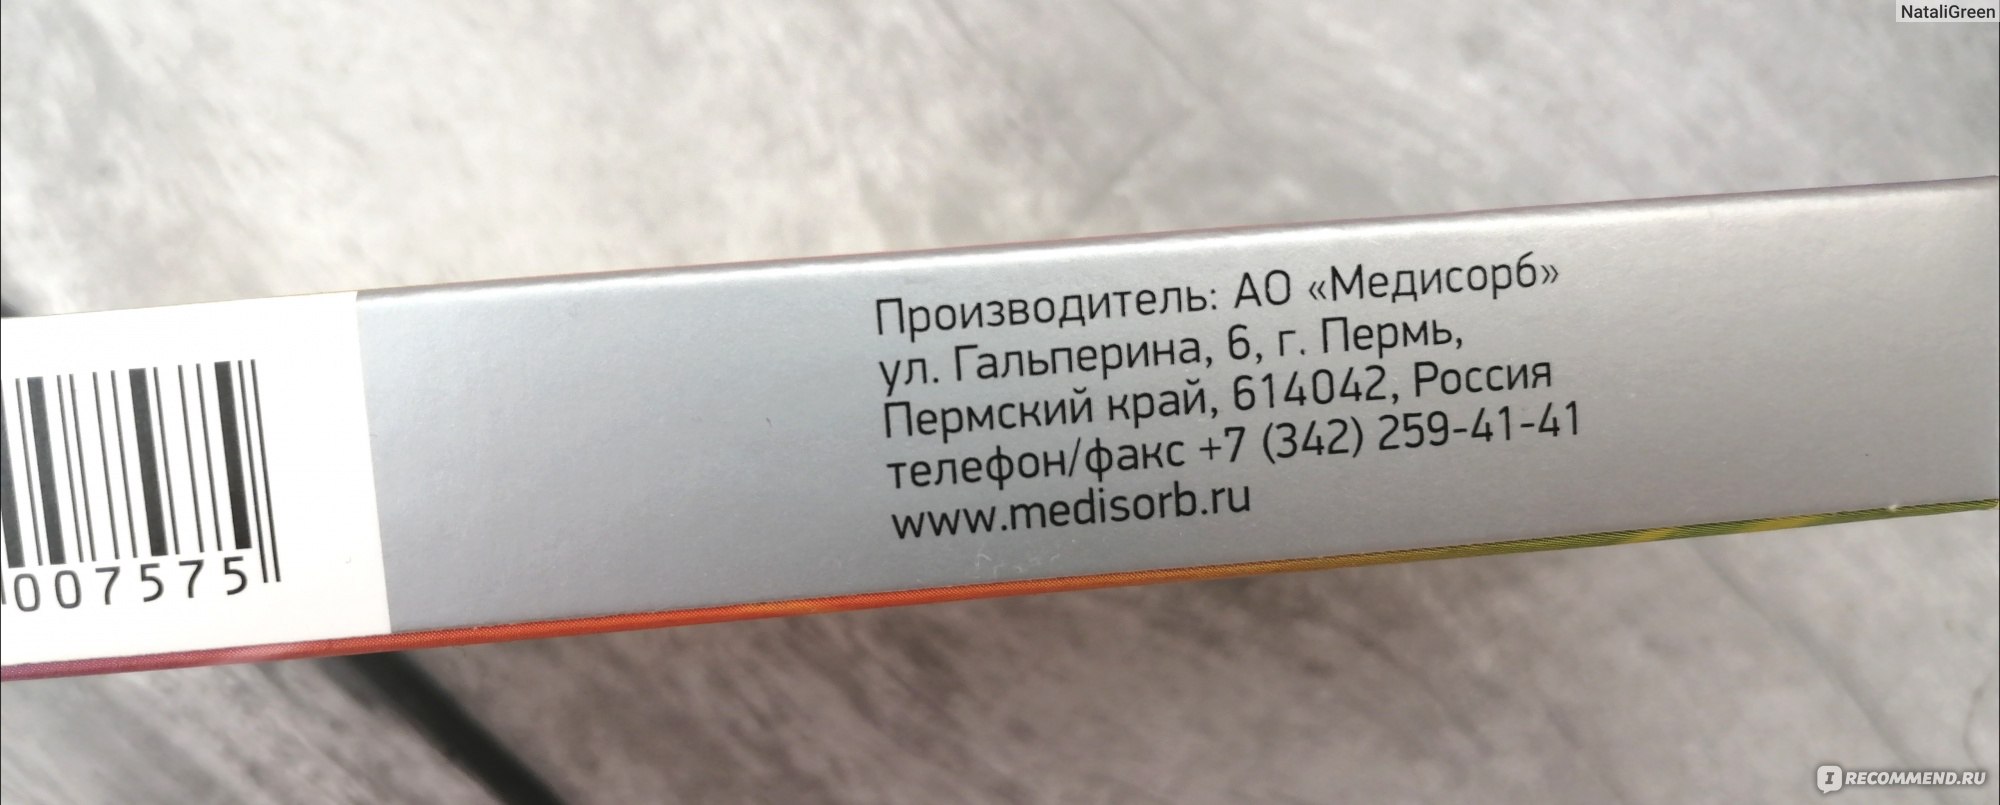 Лекарственный препарат Медисорб АО Воцивус - «Популярный препарат .